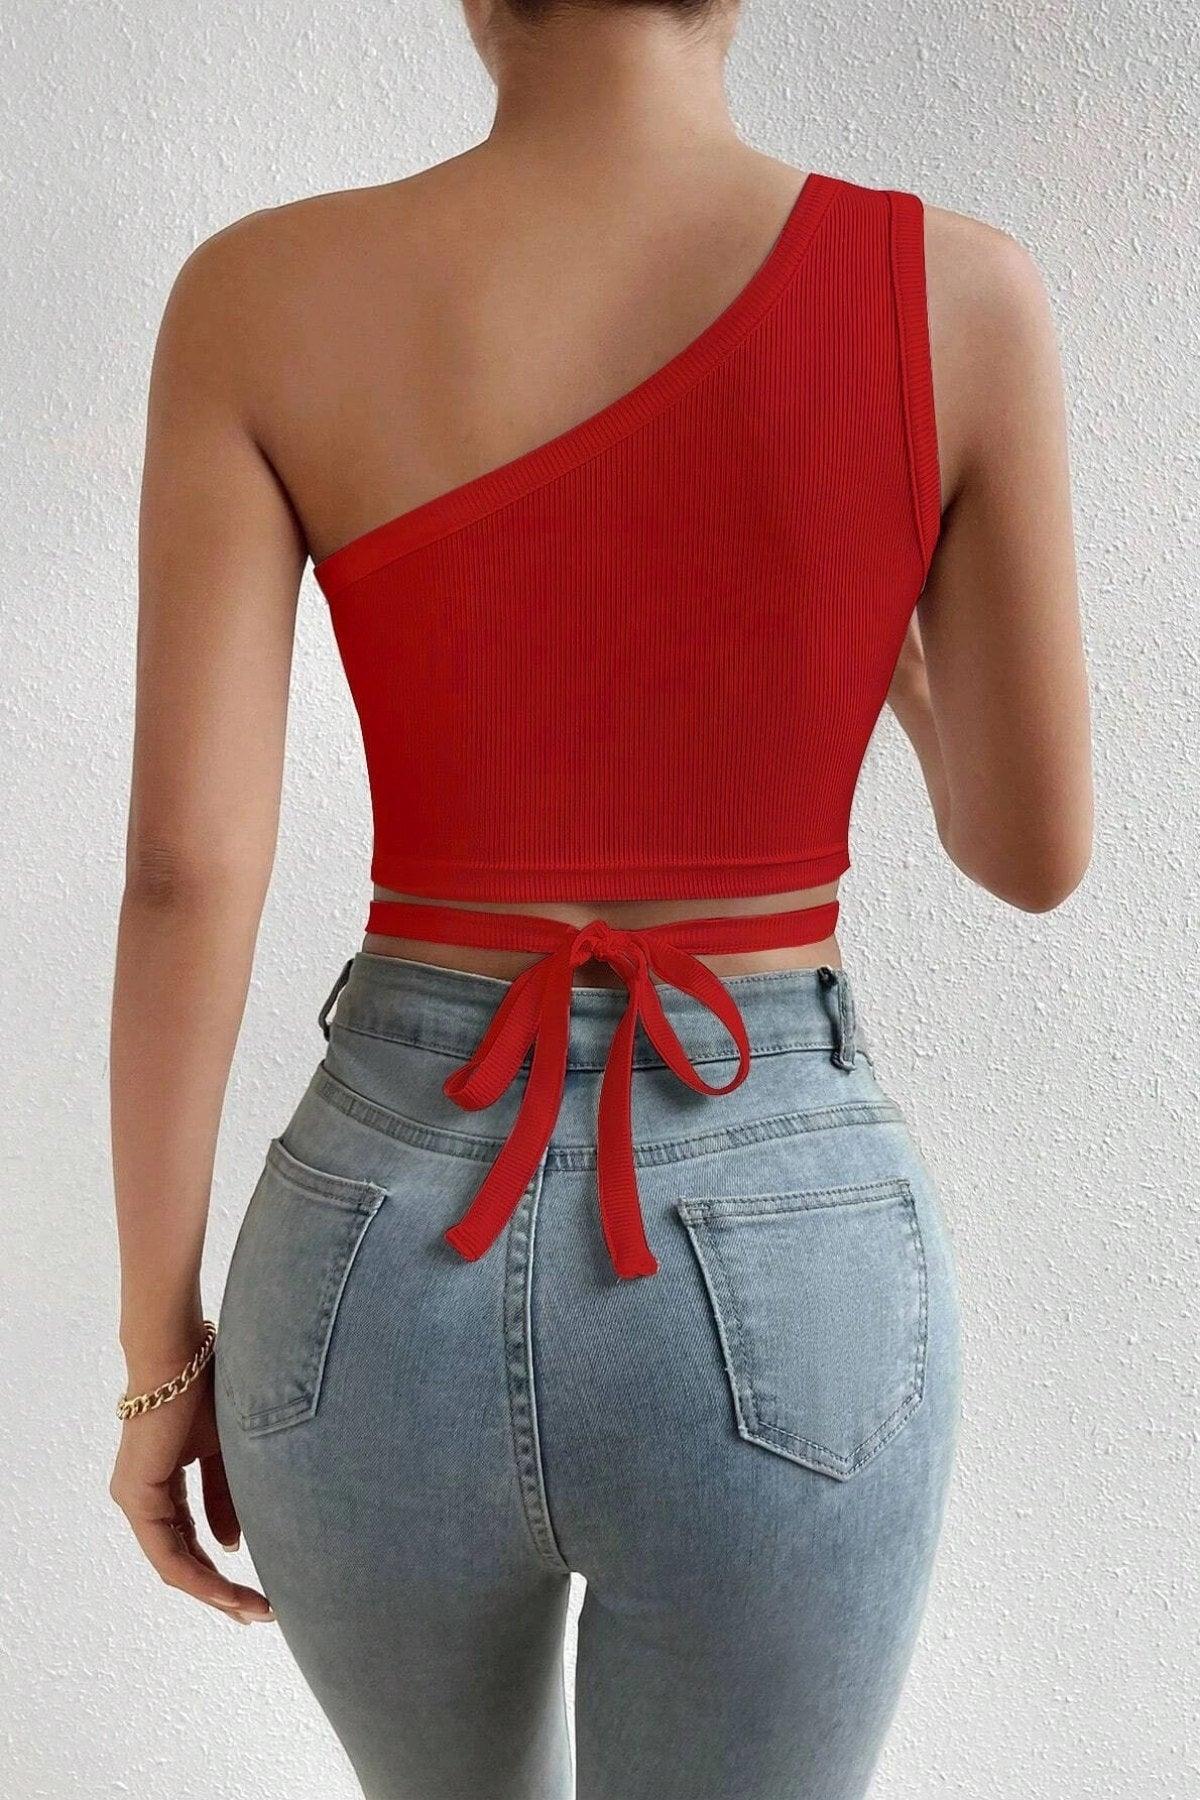 Women's Red One-Shoulder Tie Back Crop Top Blouse - Swordslife